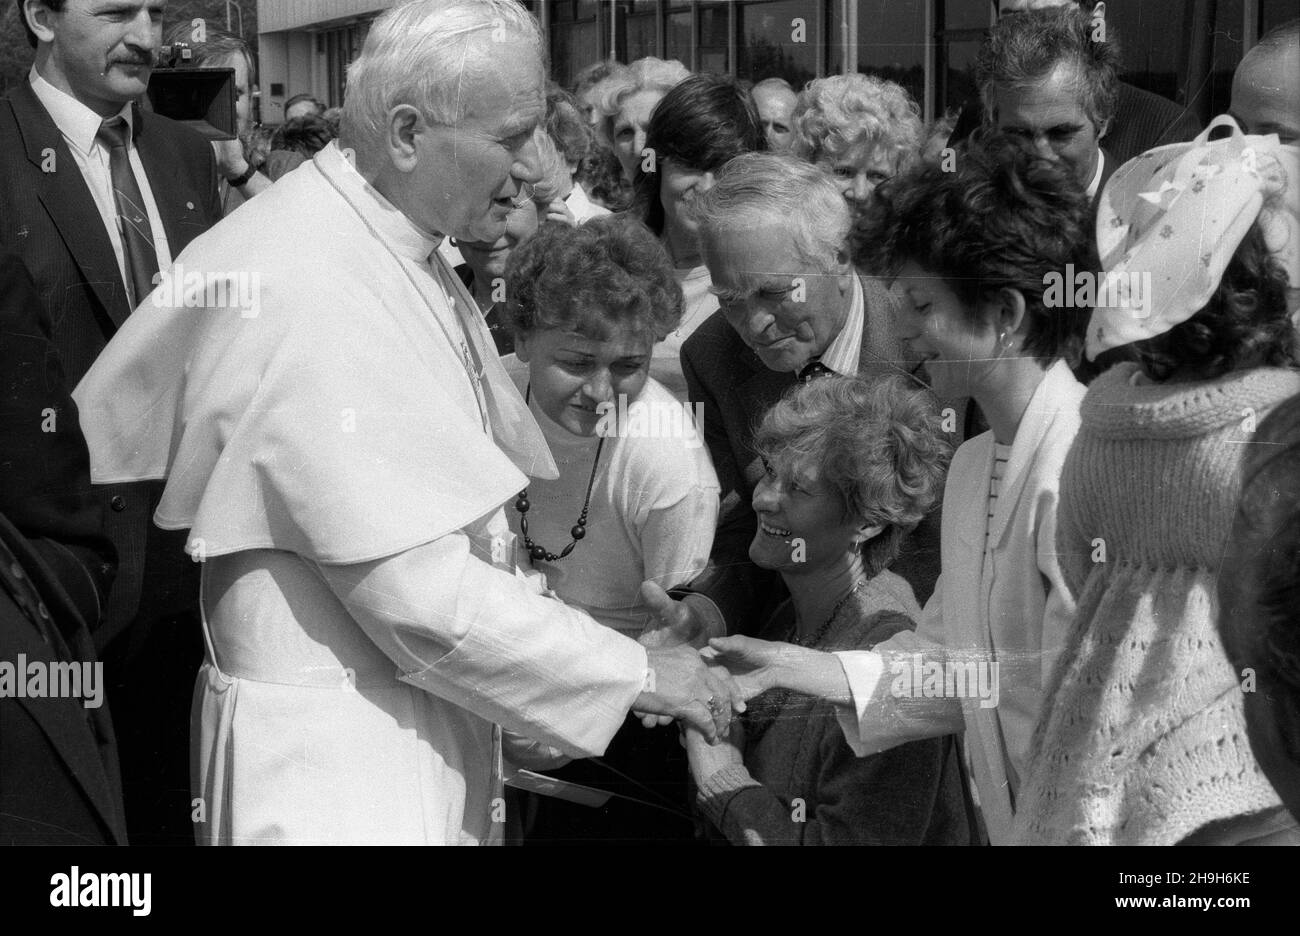 Szczecin, 1987-06-11. III pielgrzymka Ojca Œwiêtego Jana Paw³a II do Polski. Powitanie papie¿a na lotnisku w Goleniowie. Nz. m.in.: oficer Biura Ochrony Rz¹du (BOR) - Miros³aw Gawor (1L) i papie¿ Jan Pawe³ II (2L). ppr  PAP/CAF/Jerzy Undro      Szczecin, June 11, 1987. The 3rd pilgrimage of Holy Father John Paul II to Poland. The welcoming ceremony at the airport in Goleniow. Pictured: officer of the Government Protection Office (BOR)  Miroslaw Gawor and Pope John Paul II.  ppr  PAP/CAF/Jerzy Undro Stock Photo